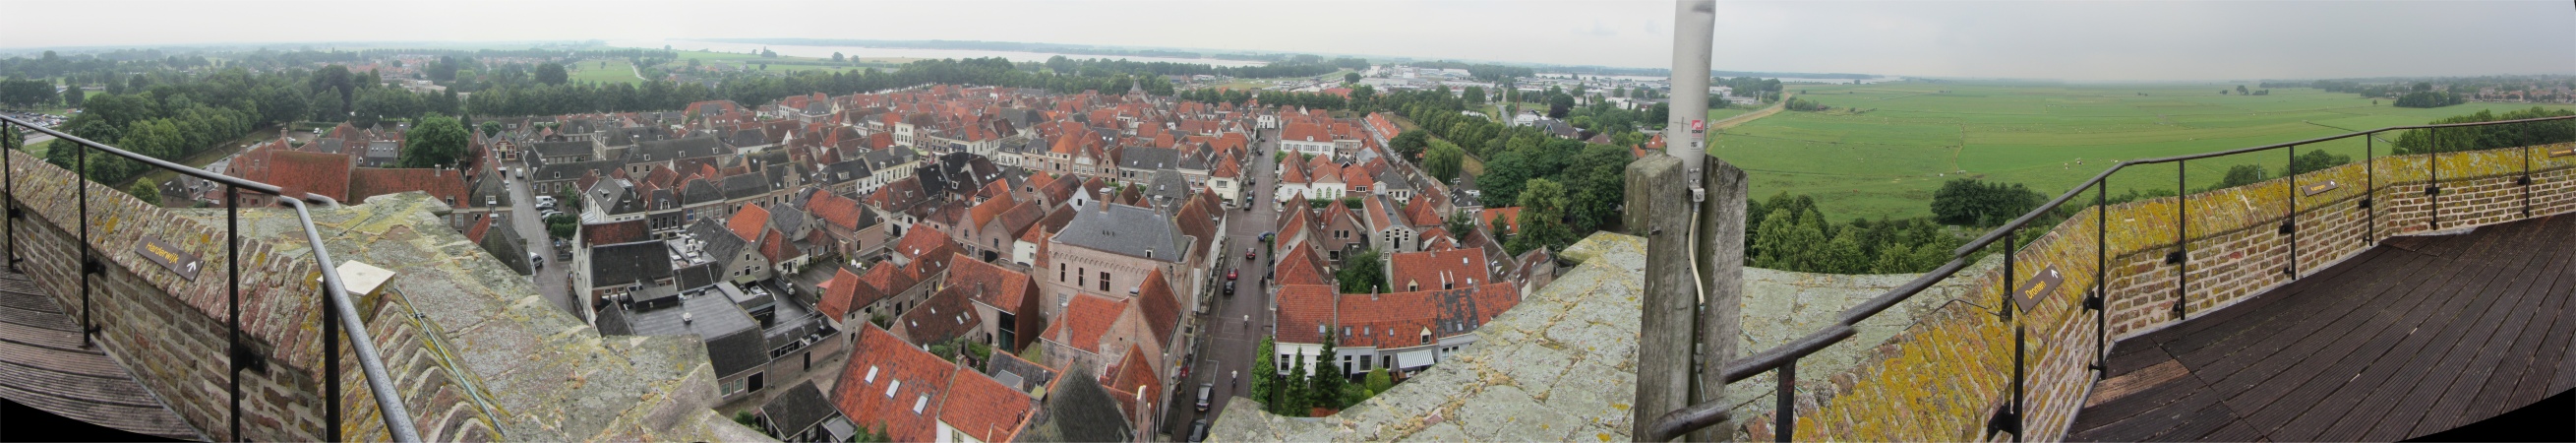 view_from_st_nicolaaskerk